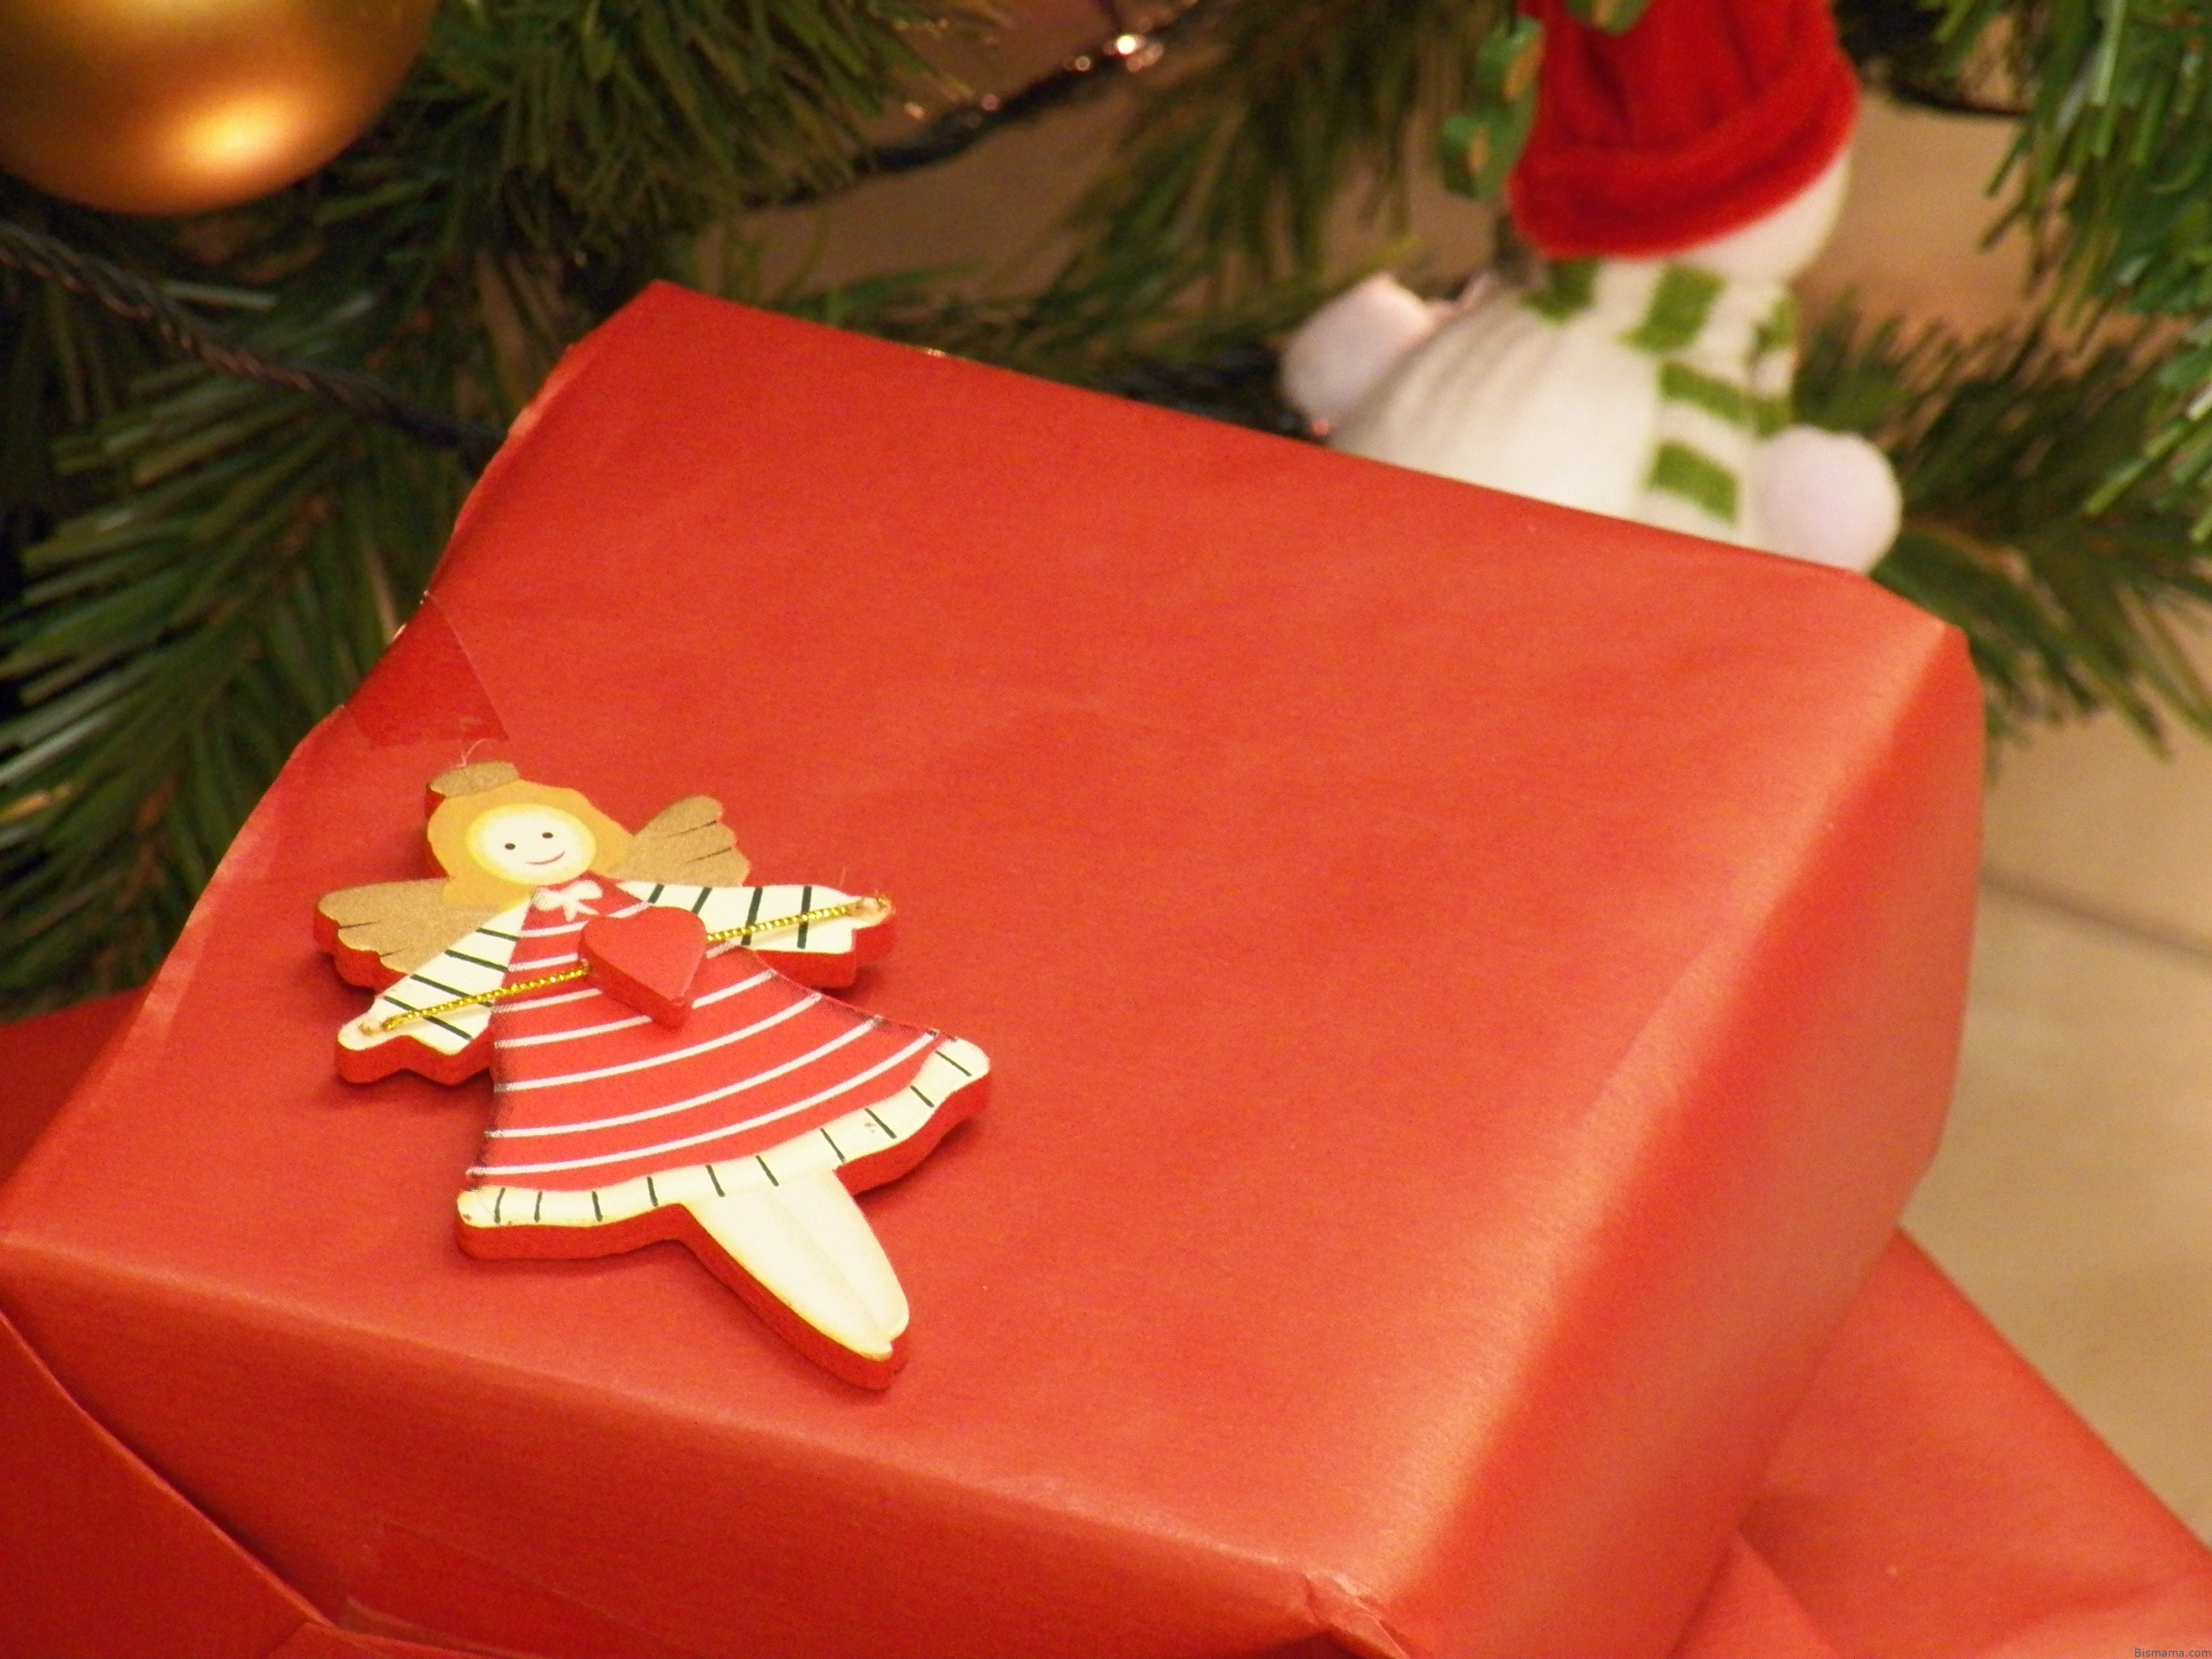 Come Incartare I Regali Di Natale In Modo Originale.Packaging Come Incartare I Regali Di Natale In Modo Originale Bismama